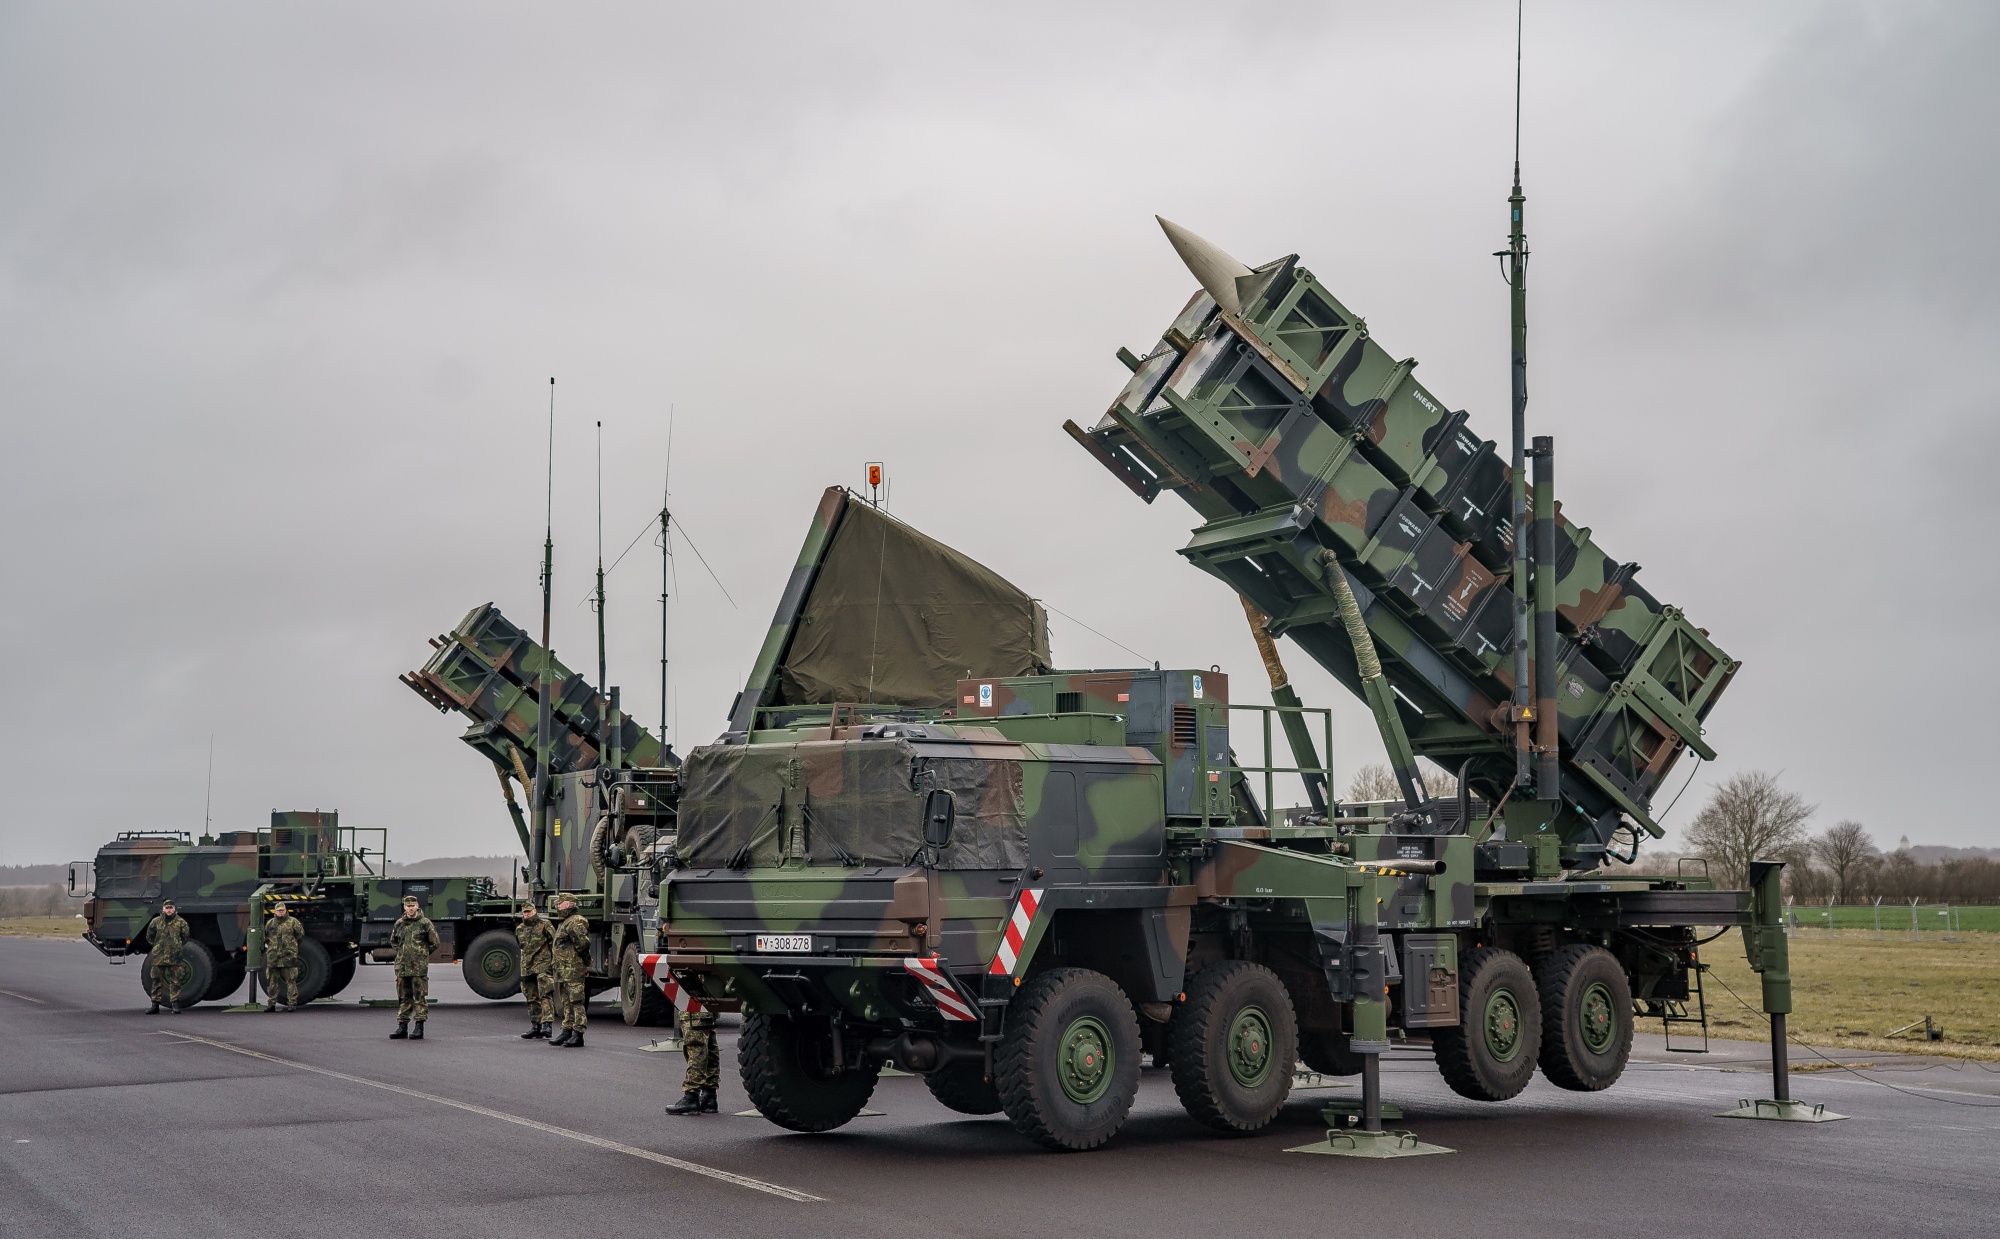 Warschau zum ersten Mal in der Geschichte durch ein Raketenabwehrsystem geschützt - Polen setzt Patriot-Boden-Luft-Raketensysteme ein